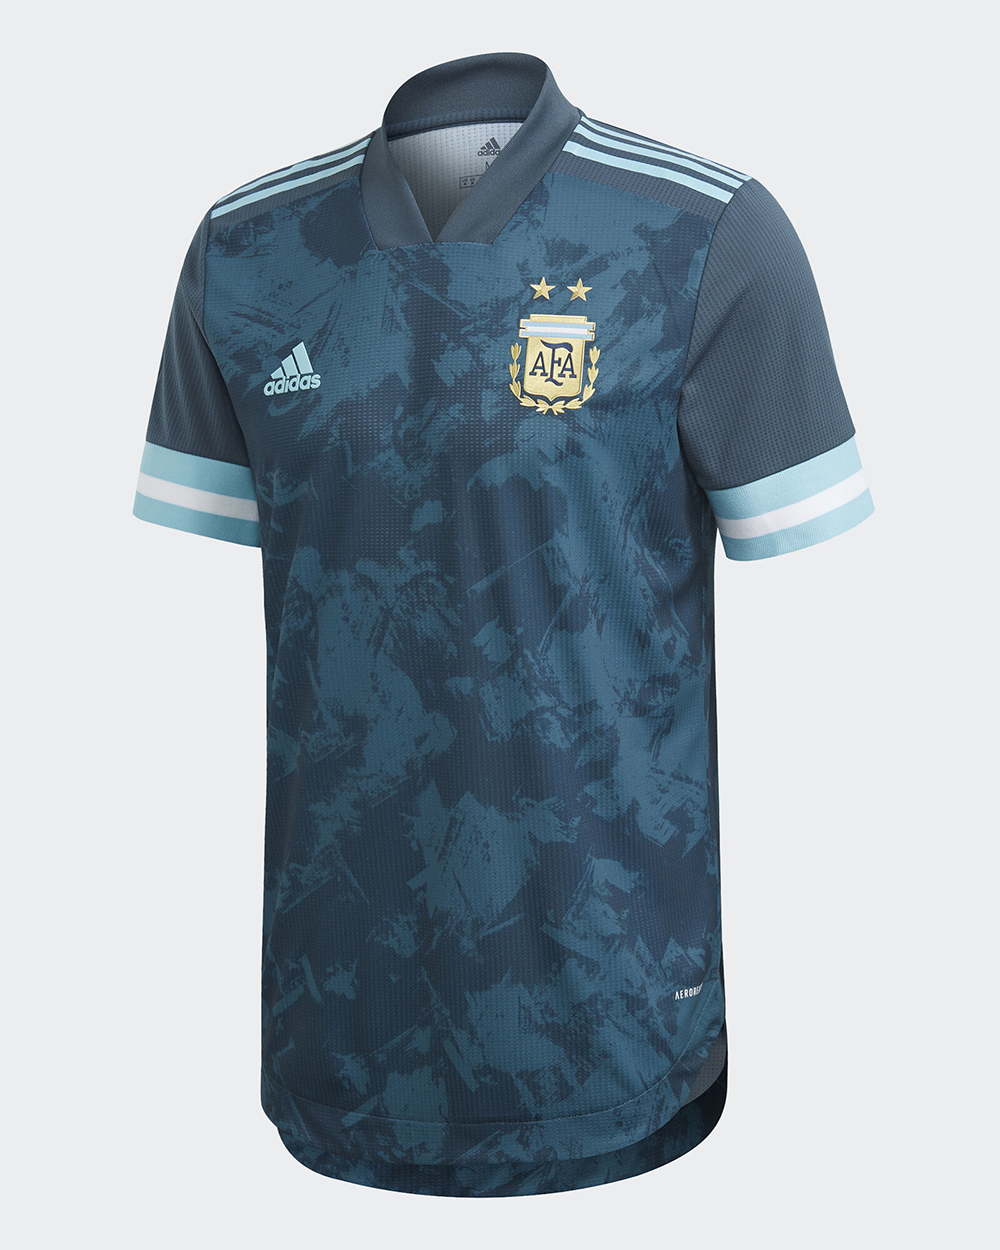 Camiseta alternativa adidas de Argentina Copa América 2020